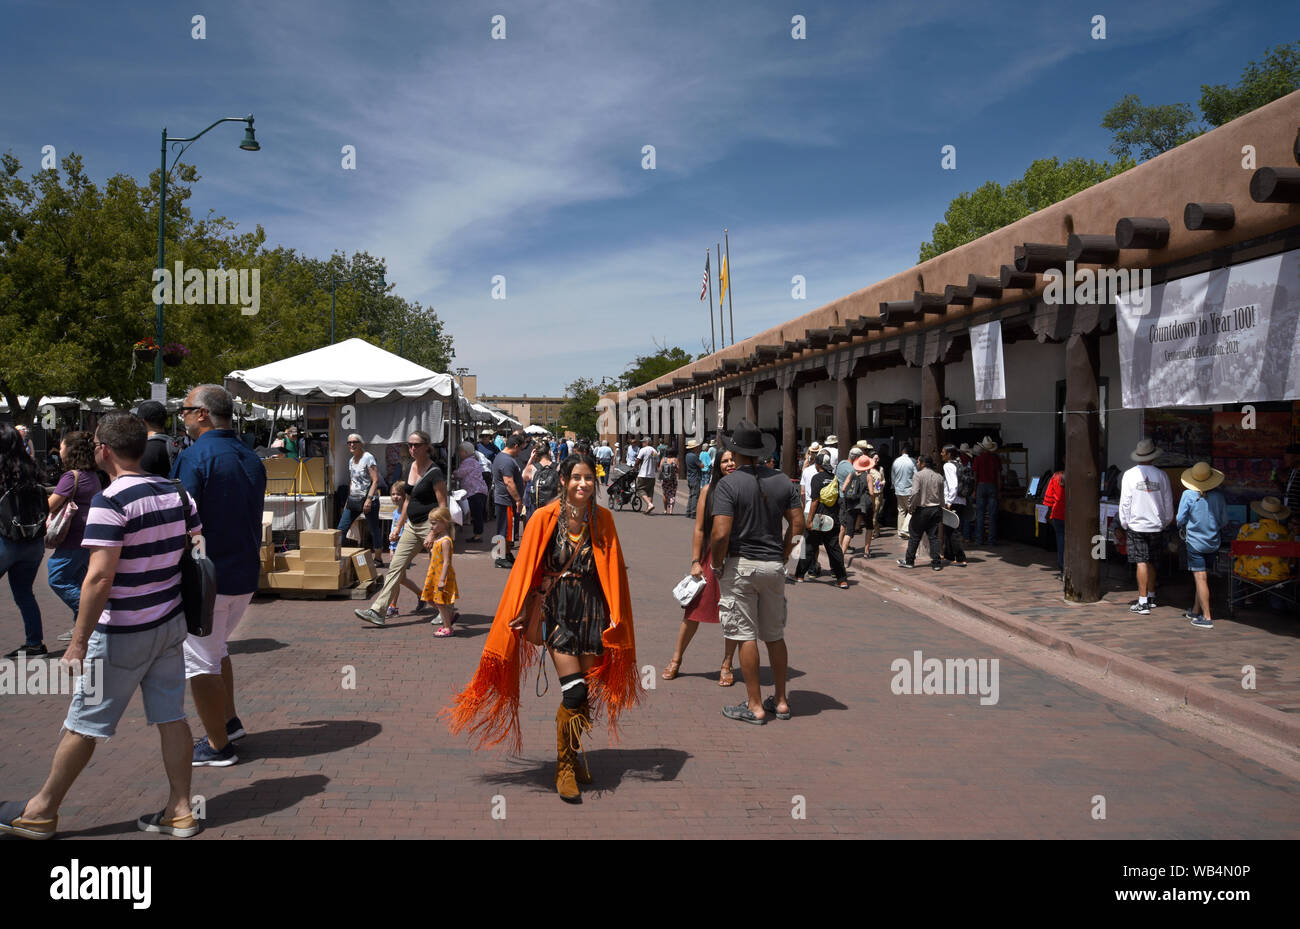 Les touristes aiment visiter le marché indien de Santa Fe au Nouveau Mexique aux Etats-Unis. Banque D'Images